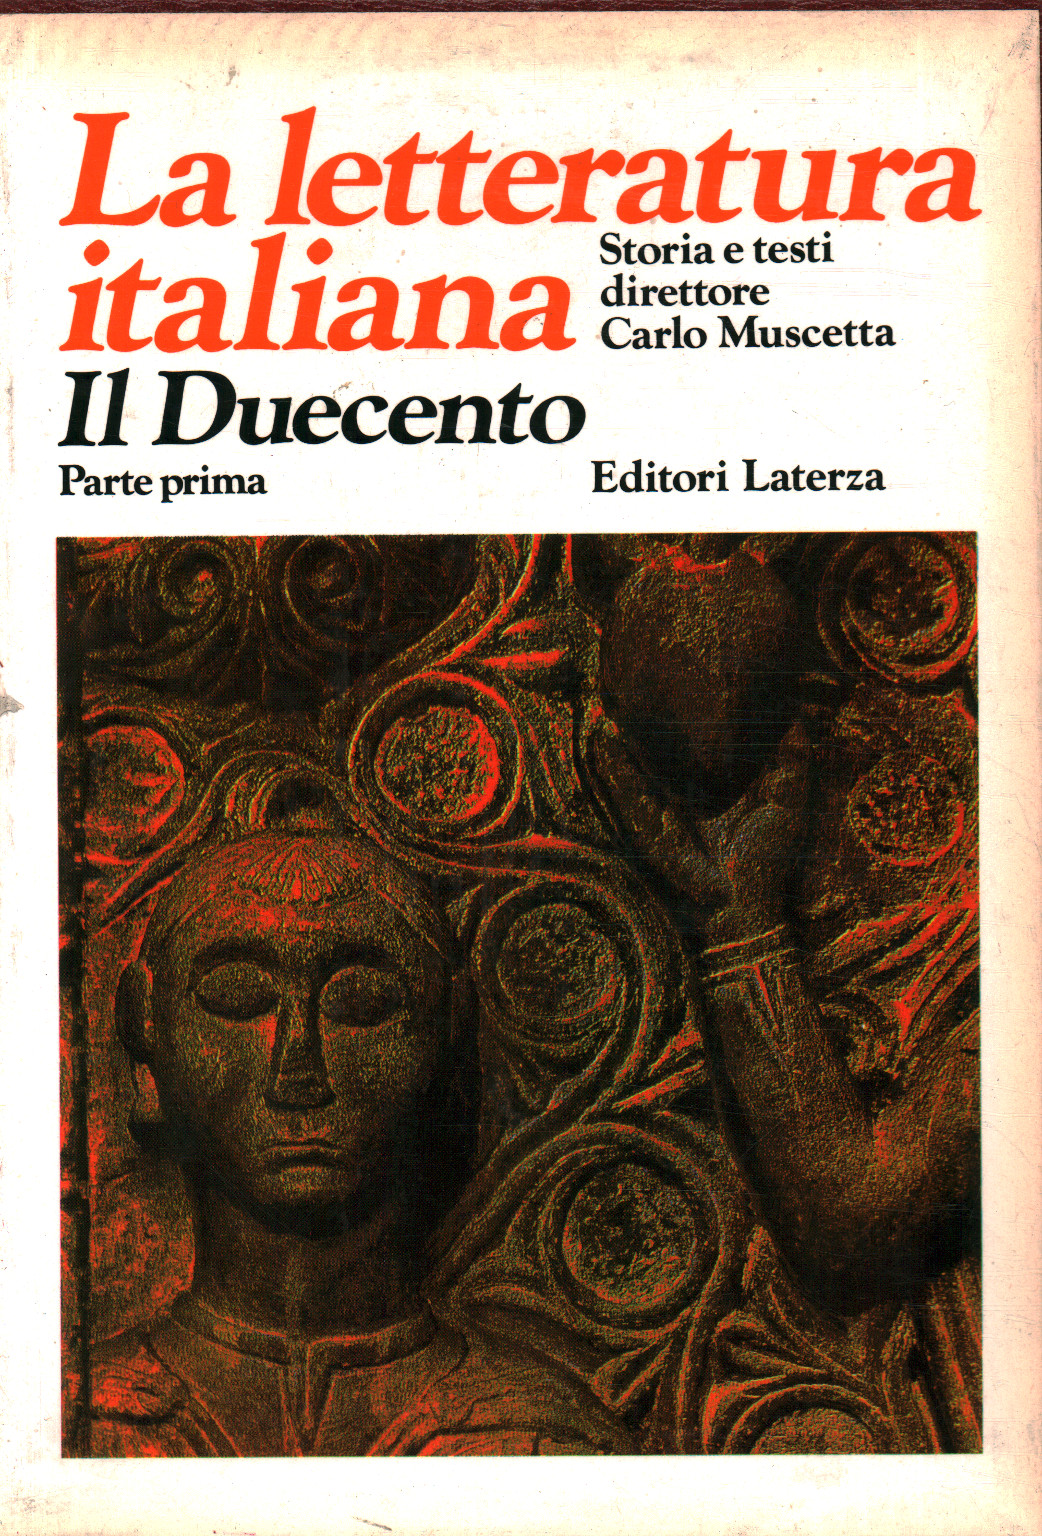 La letteratura italiana Storia e testi. Il Duecent, Emilio Pasquini Antonio Enzo Quaglio